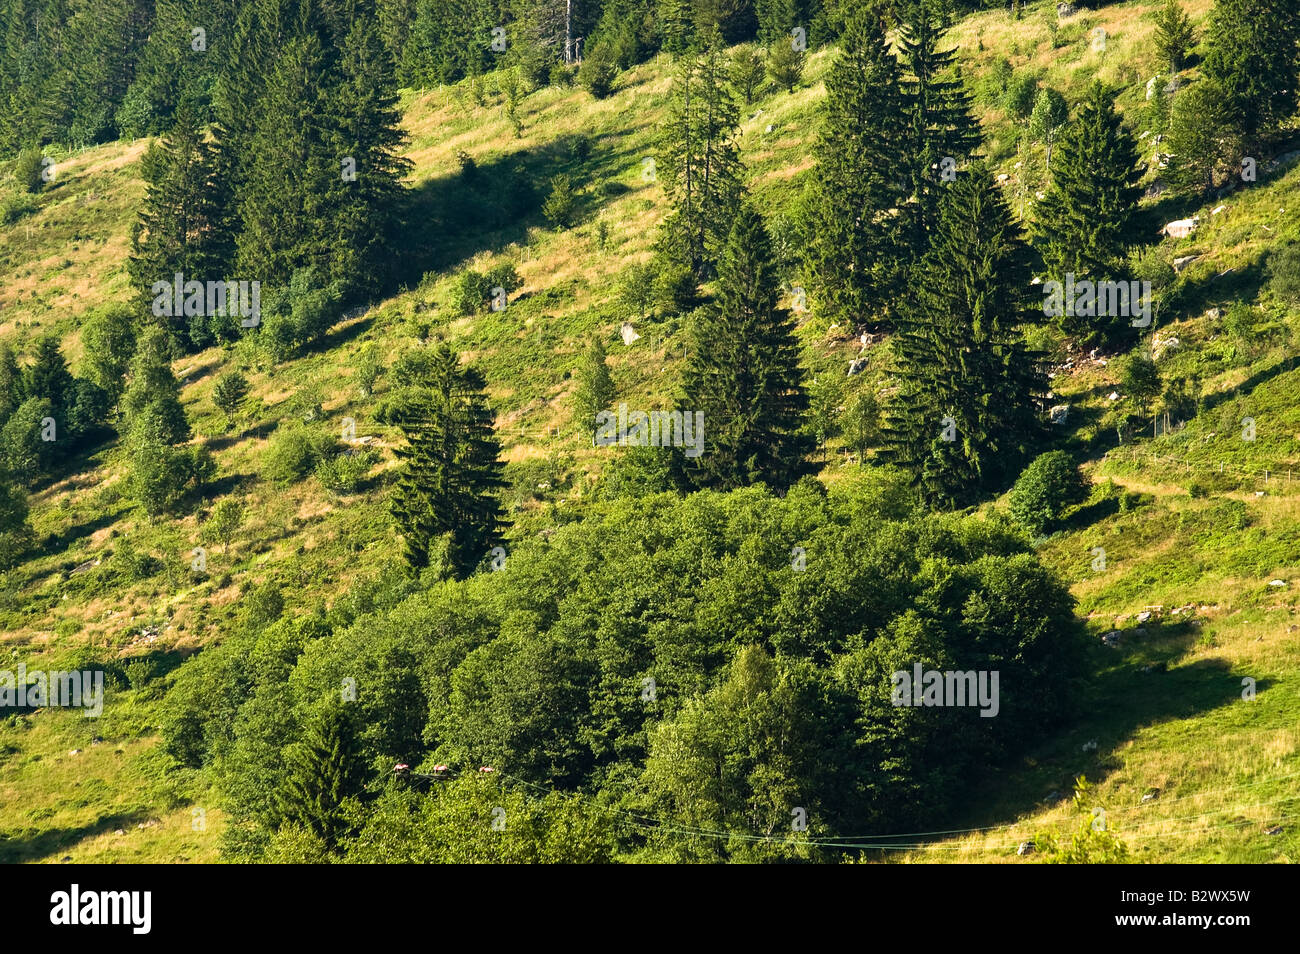 Valley in the black-forest region near Menzenschwand Stock Photo